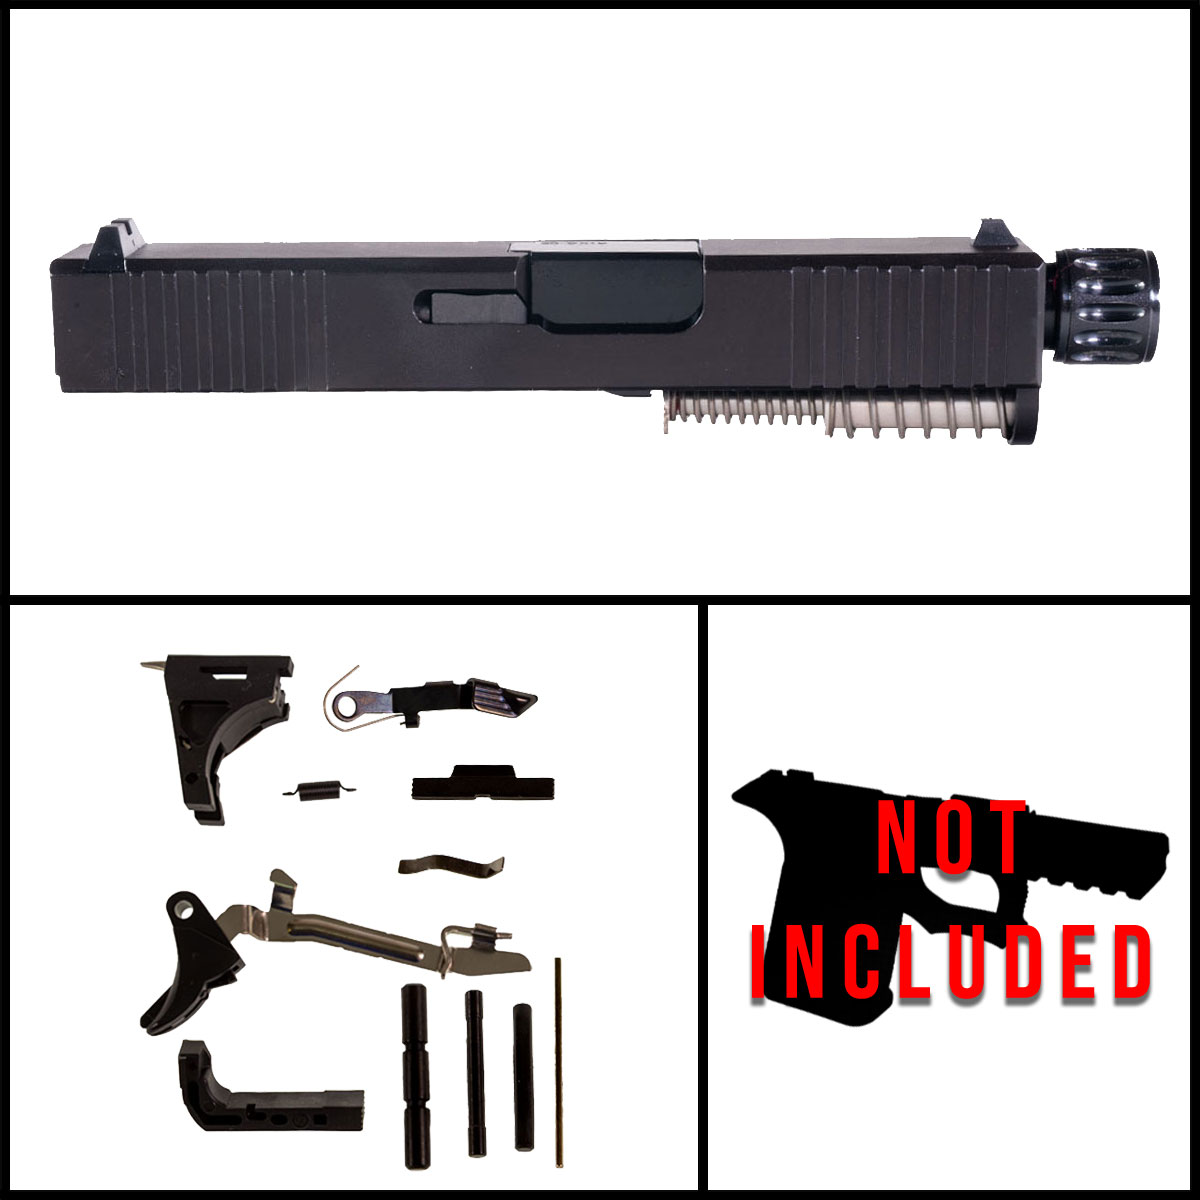 DTT 'Snub Nose' 9mm Full Pistol Build Kit (Everything Minus Frame) - Glock 26 Gen 1-2 Compatible